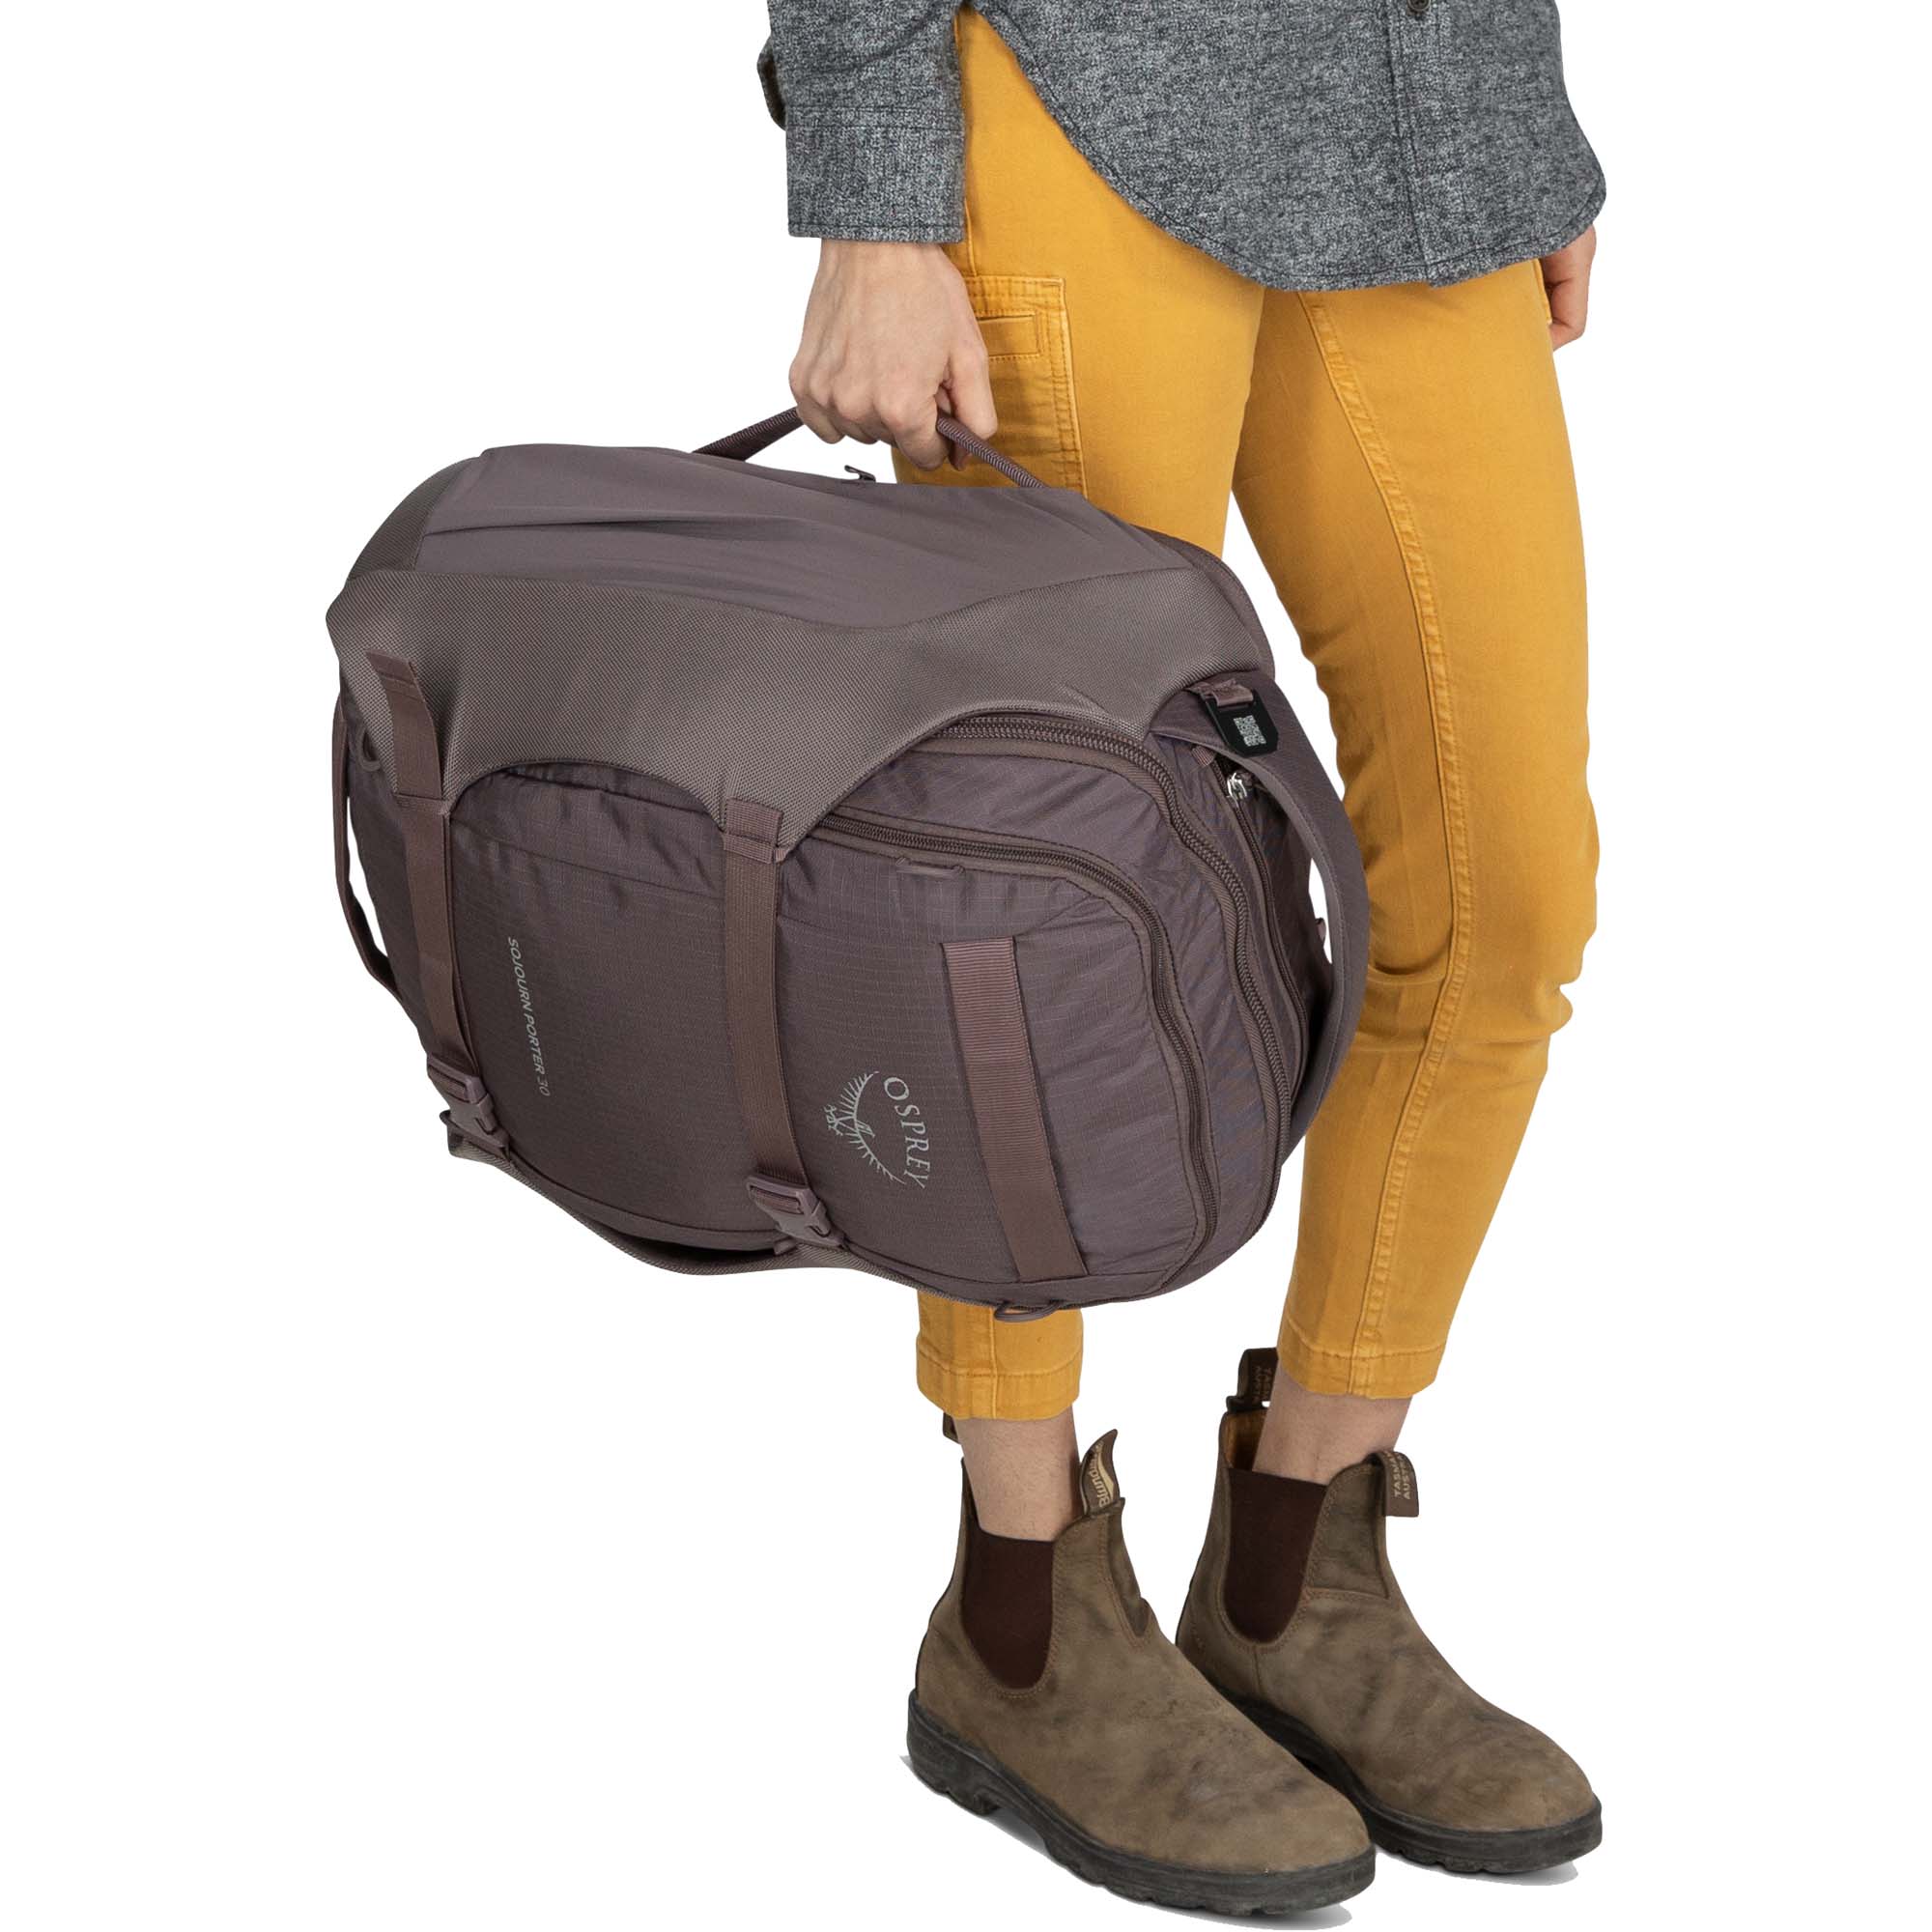 Osprey Sojourn Porter 30 Travel Backpack